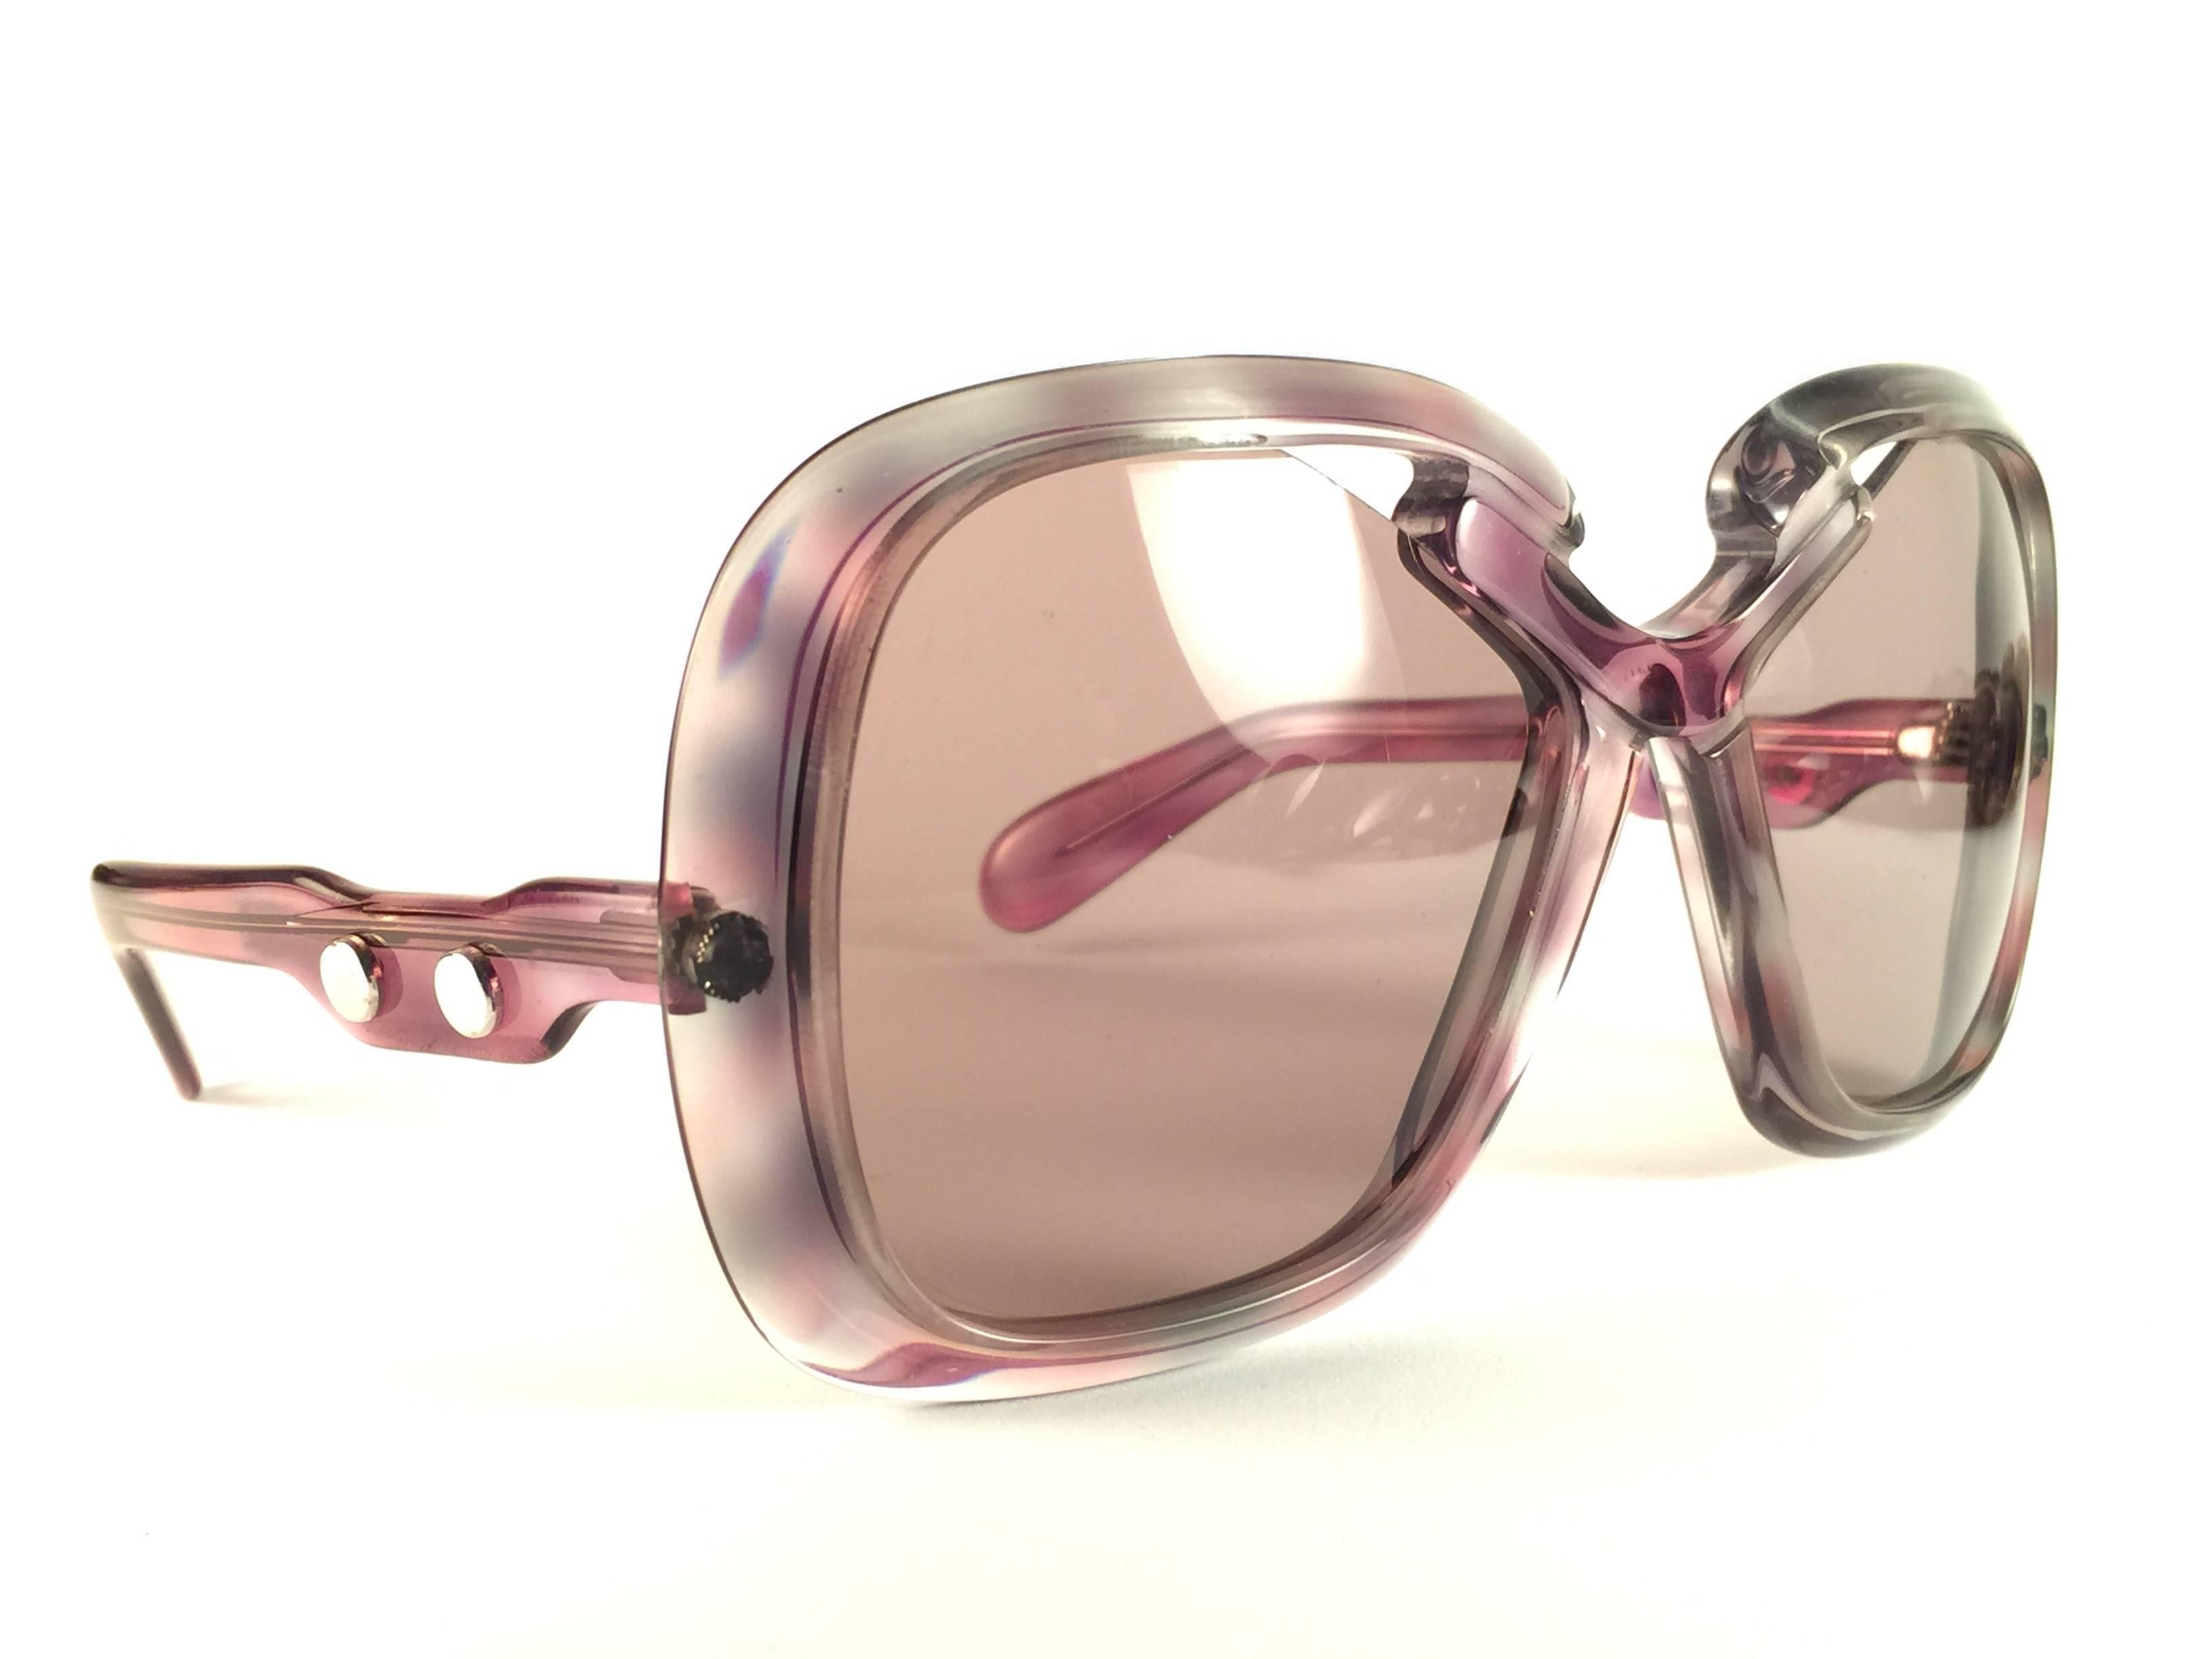 New Vintage Collector Item Silhouette Clear Colours and Silver accents  Monture de lunettes de soleil portant une paire de verres marron clair impeccables.   

Fabriqué en Allemagne dans les années 1970.